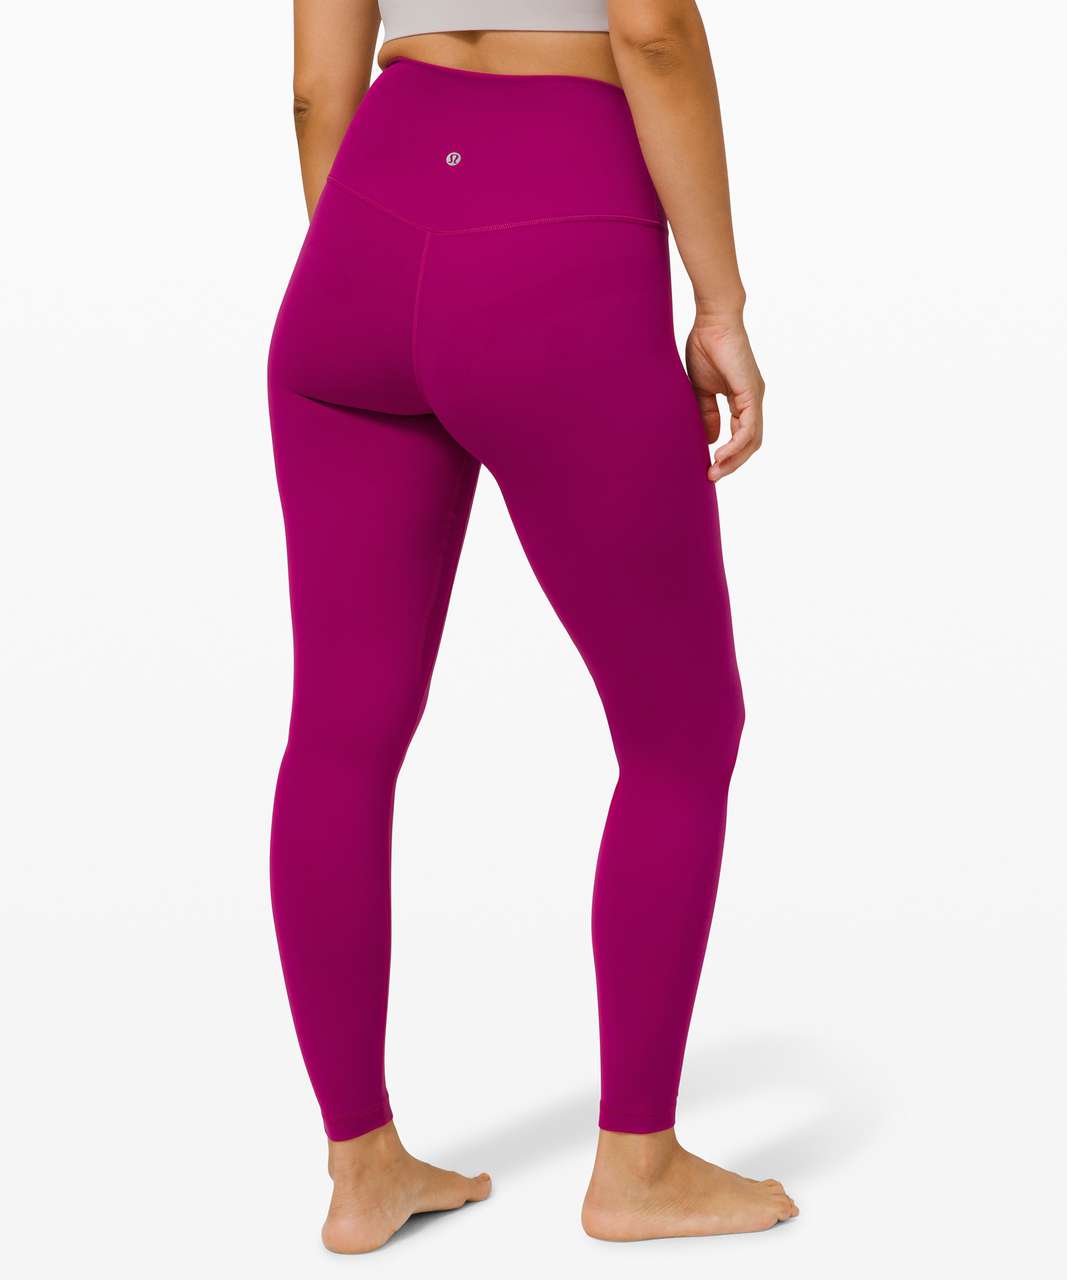 Women's Lululemon Size 10 Running Tights Maroon & Fuchsia Pink Stripe